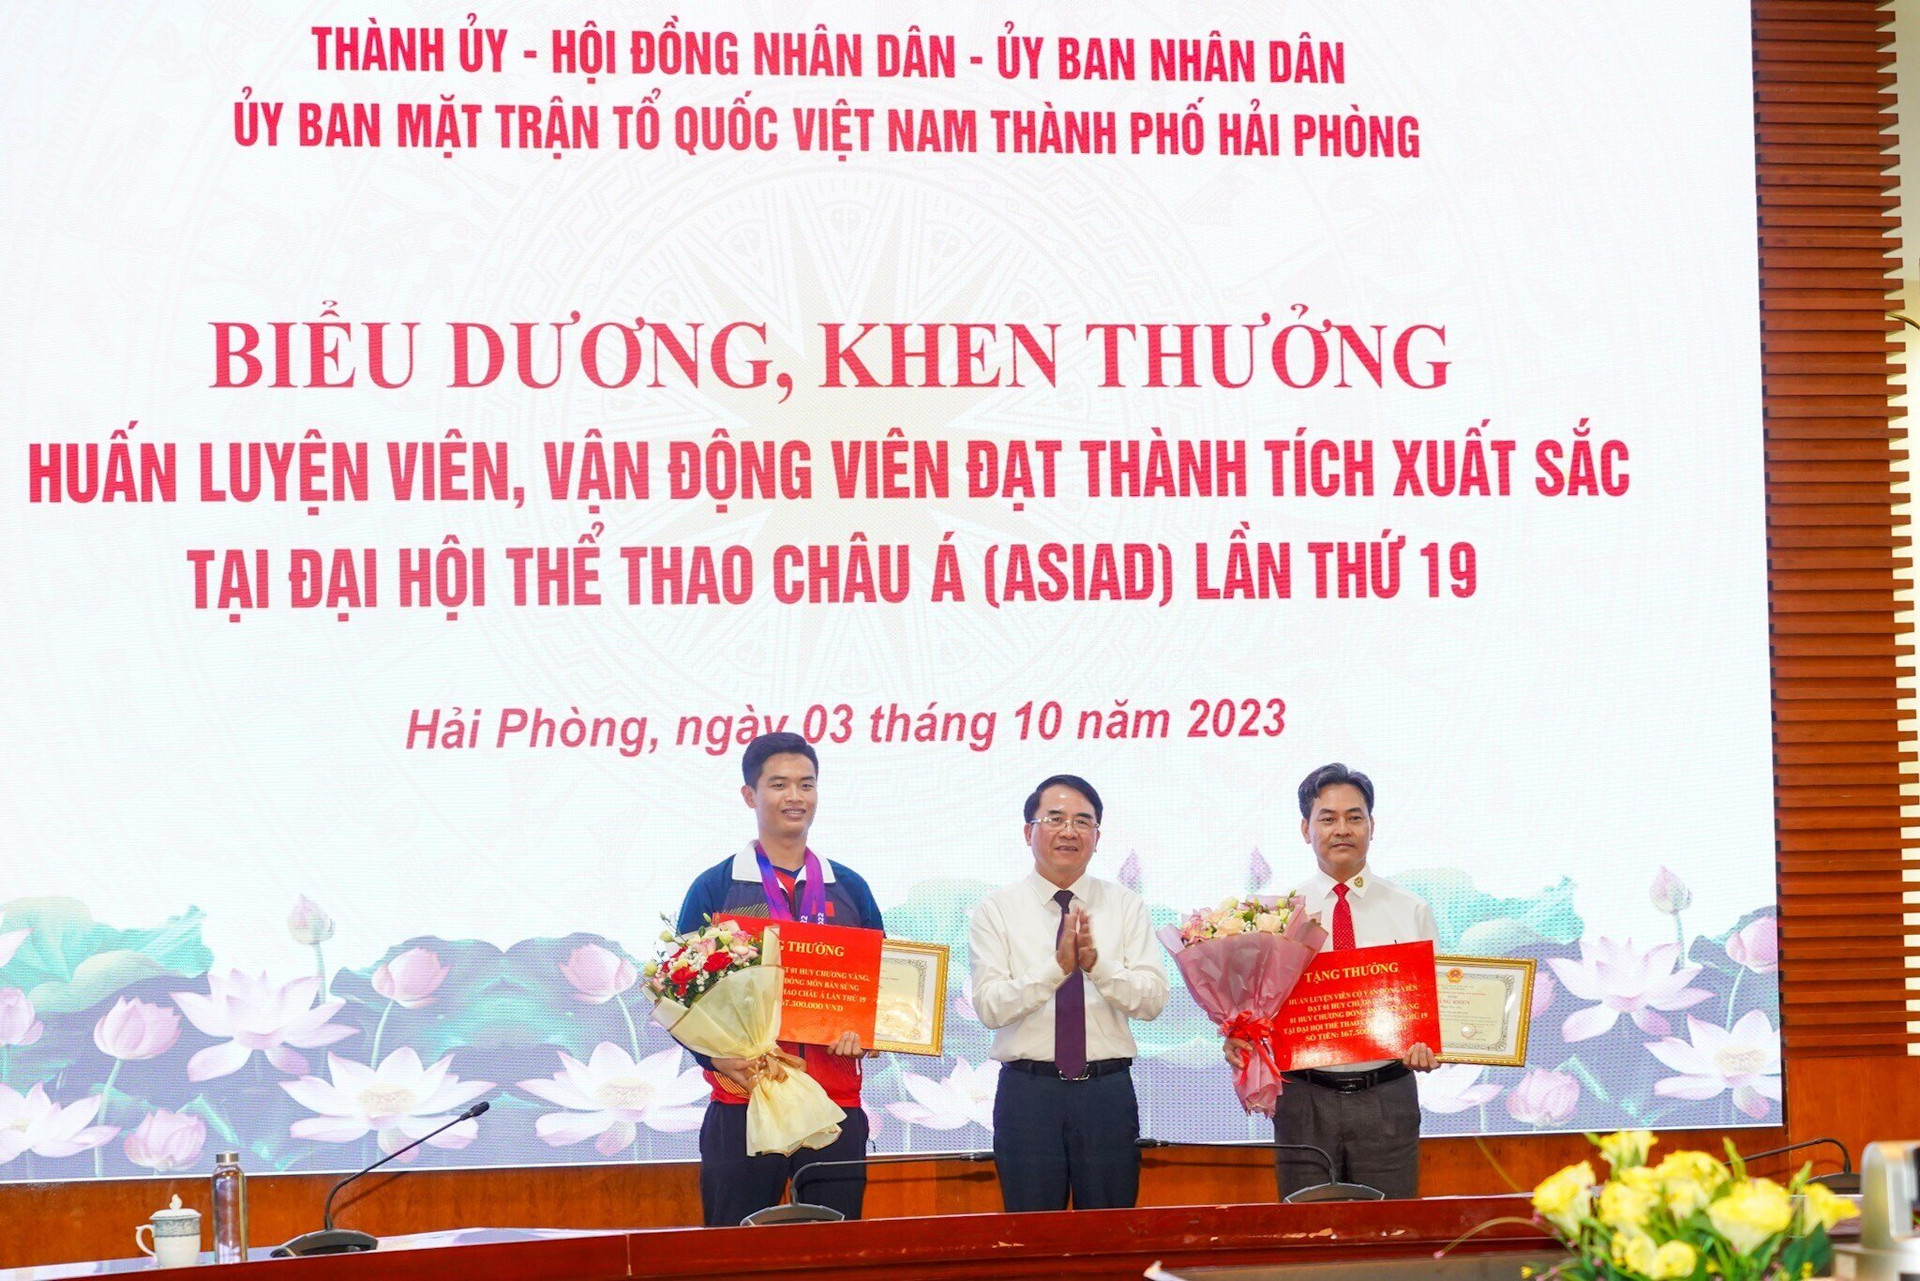 Phó Chủ tịch UBND TP Hải Phòng Lê Khắc Nam trao Bằng khen của Chủ tịch UBND thành phố cho huấn luyện viên Phạm Cao Sơn và vận động viên Phạm Quang Huy.